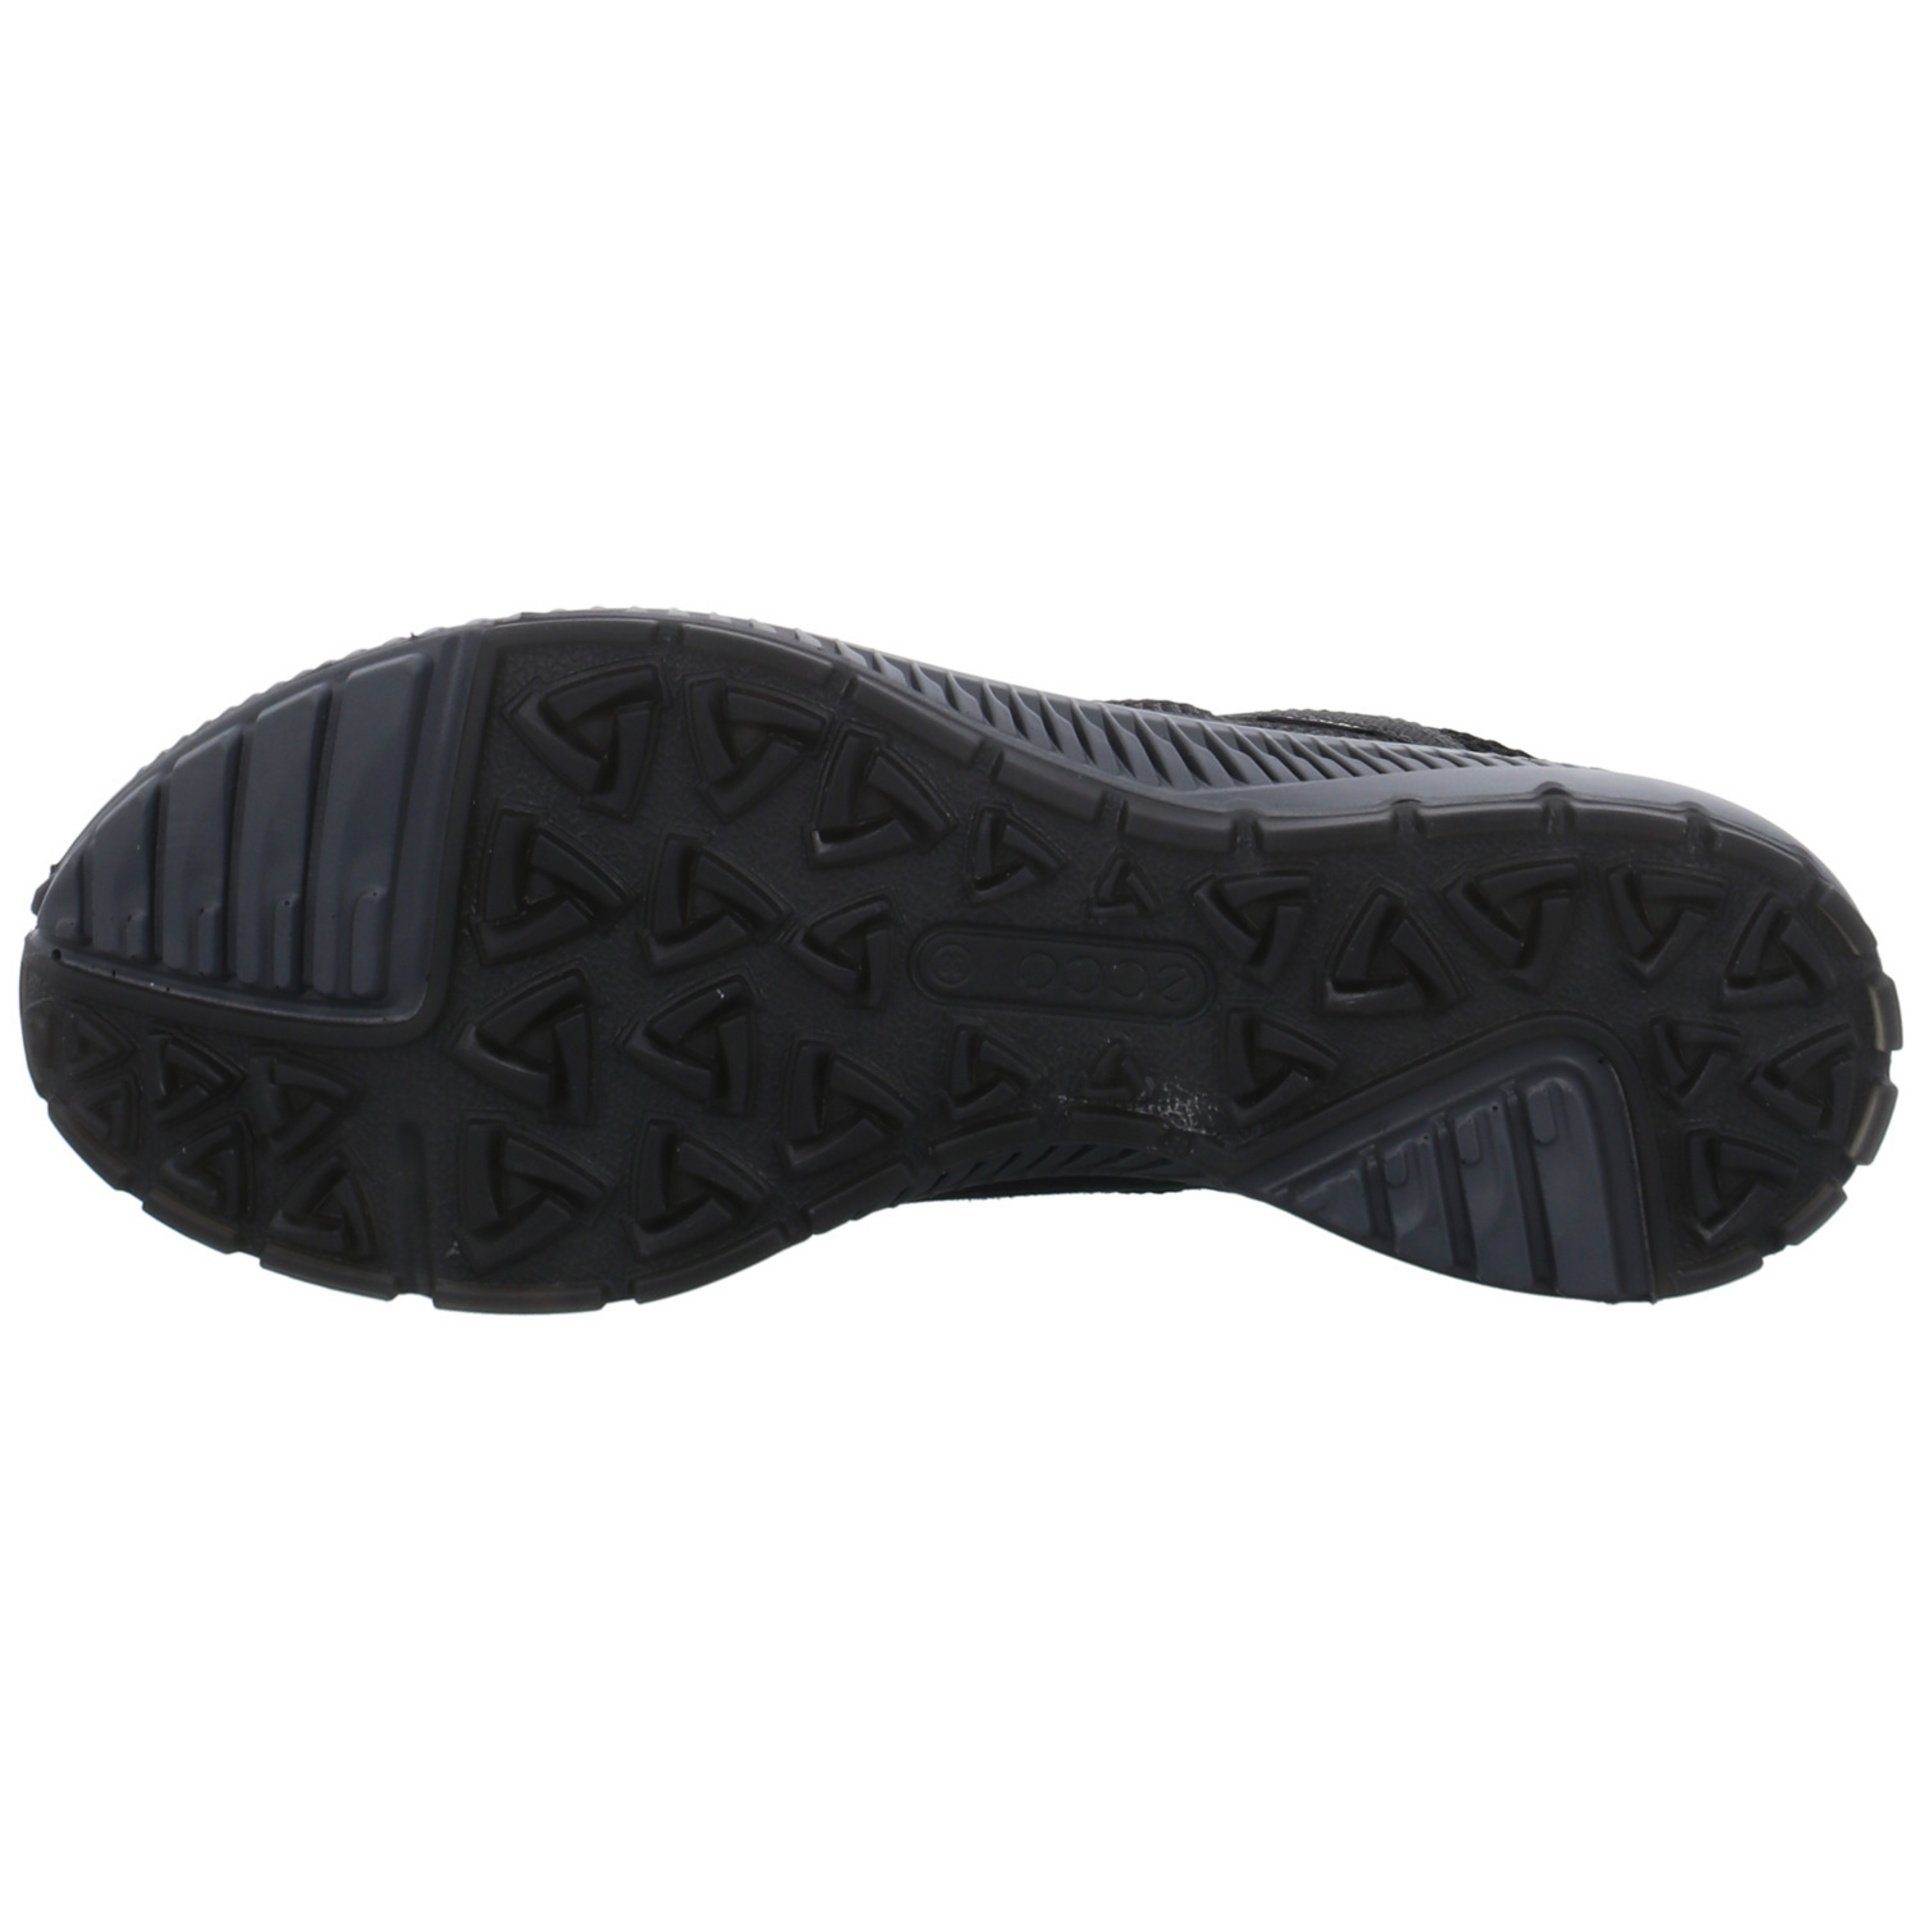 Terracruise Ecco Outdoorschuh Schuhe GTX black Outdoorschuh Outdoor Damen Synthetikkombination